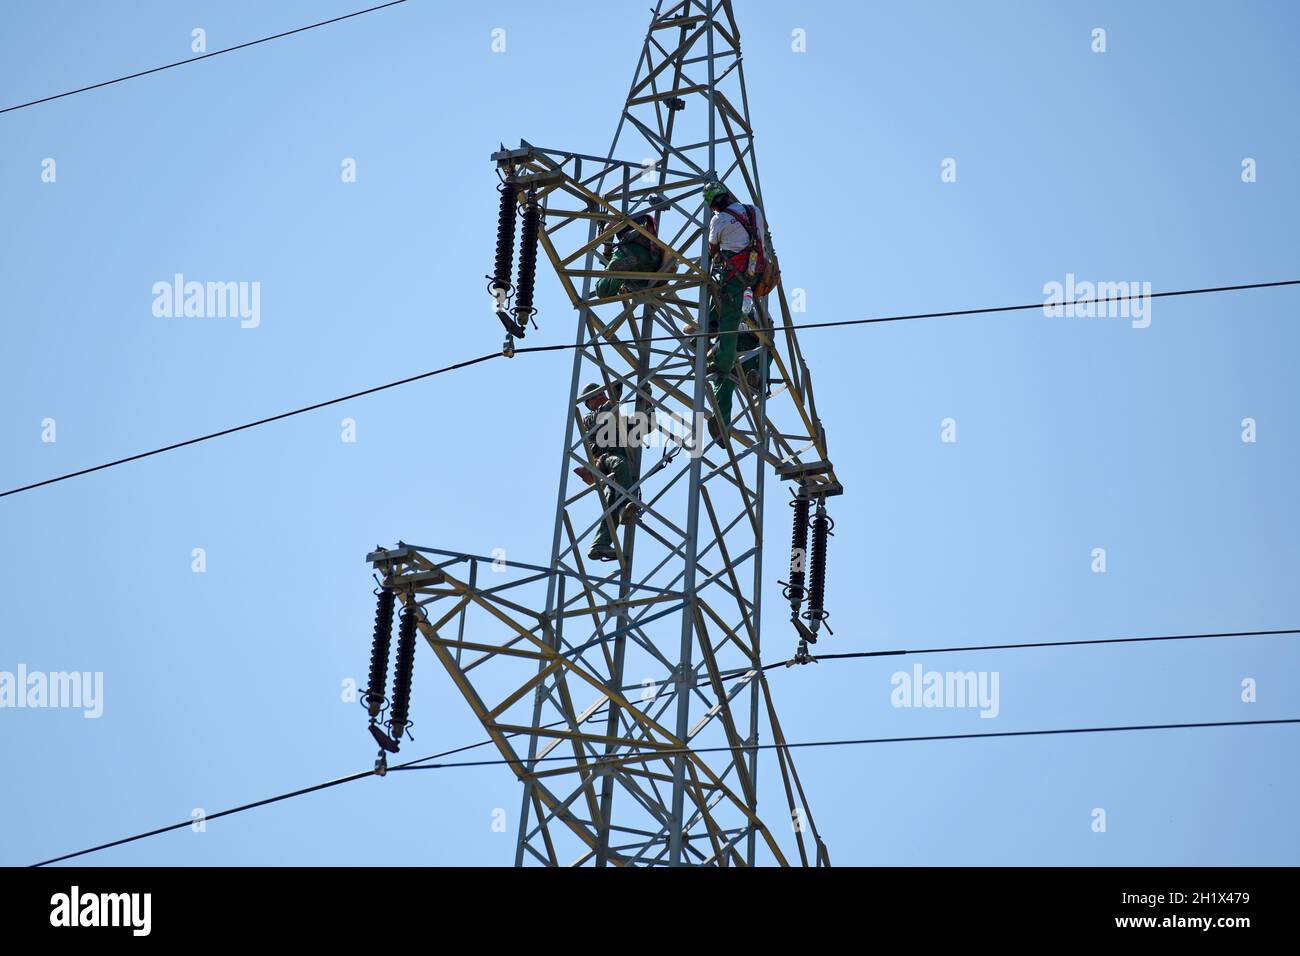 Arbeiter auf einem Hochspannungsmast, Oberösterreich, Österreich, Europa - Workers on a high voltage pylon, Upper Austria, Austria, Europe Stock Photo